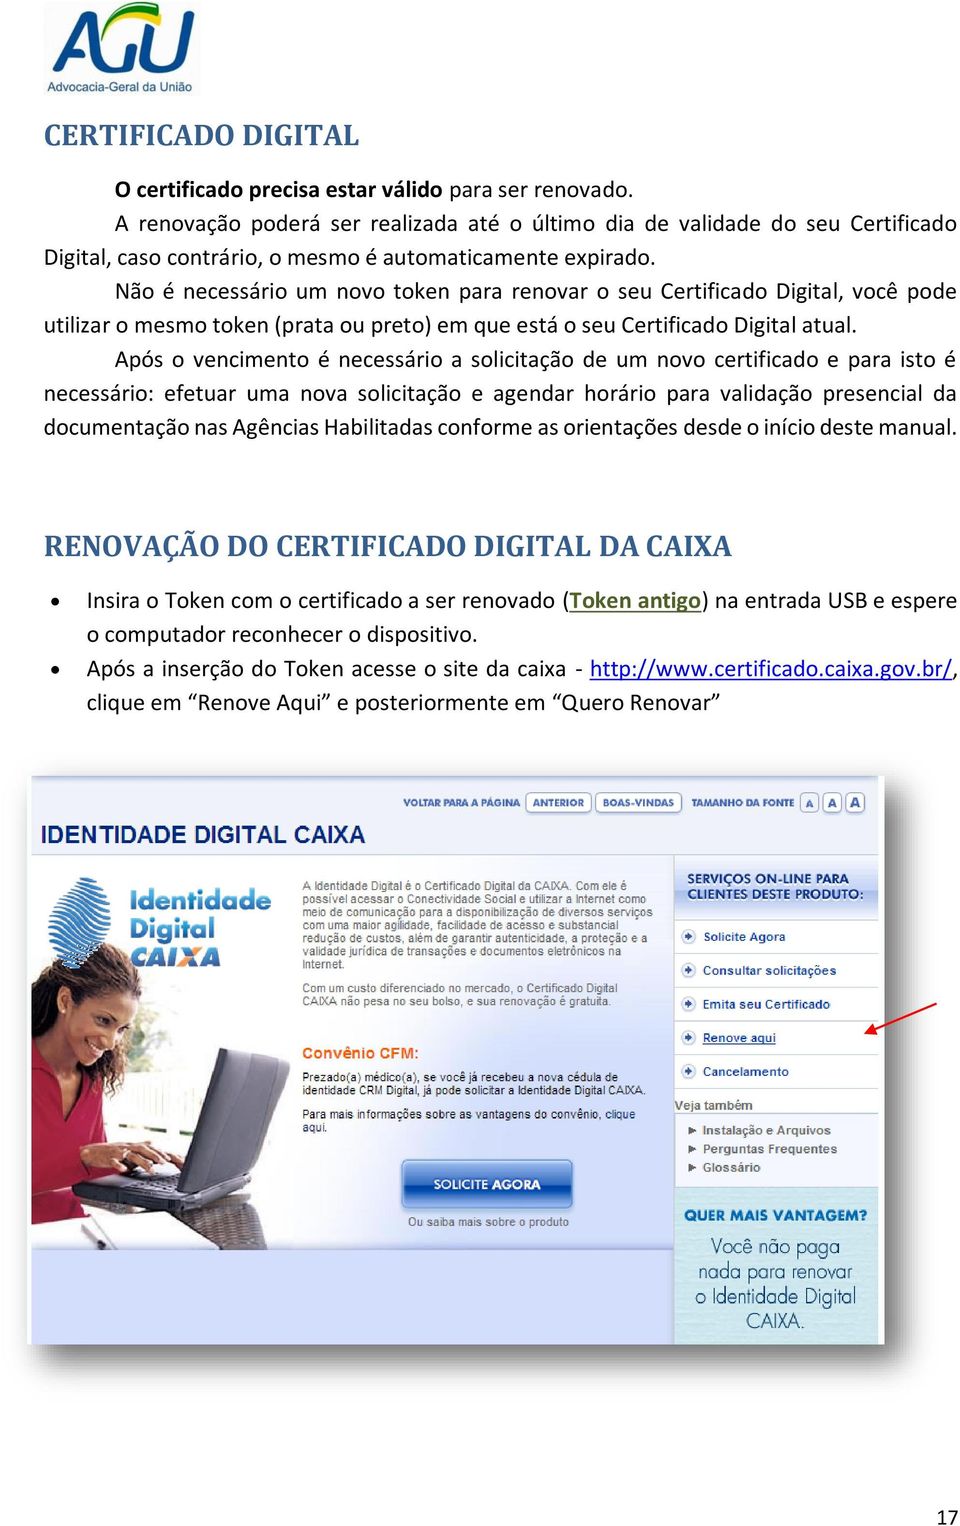 Não é necessário um novo token para renovar o seu Certificado Digital, você pode utilizar o mesmo token (prata ou preto) em que está o seu Certificado Digital atual.